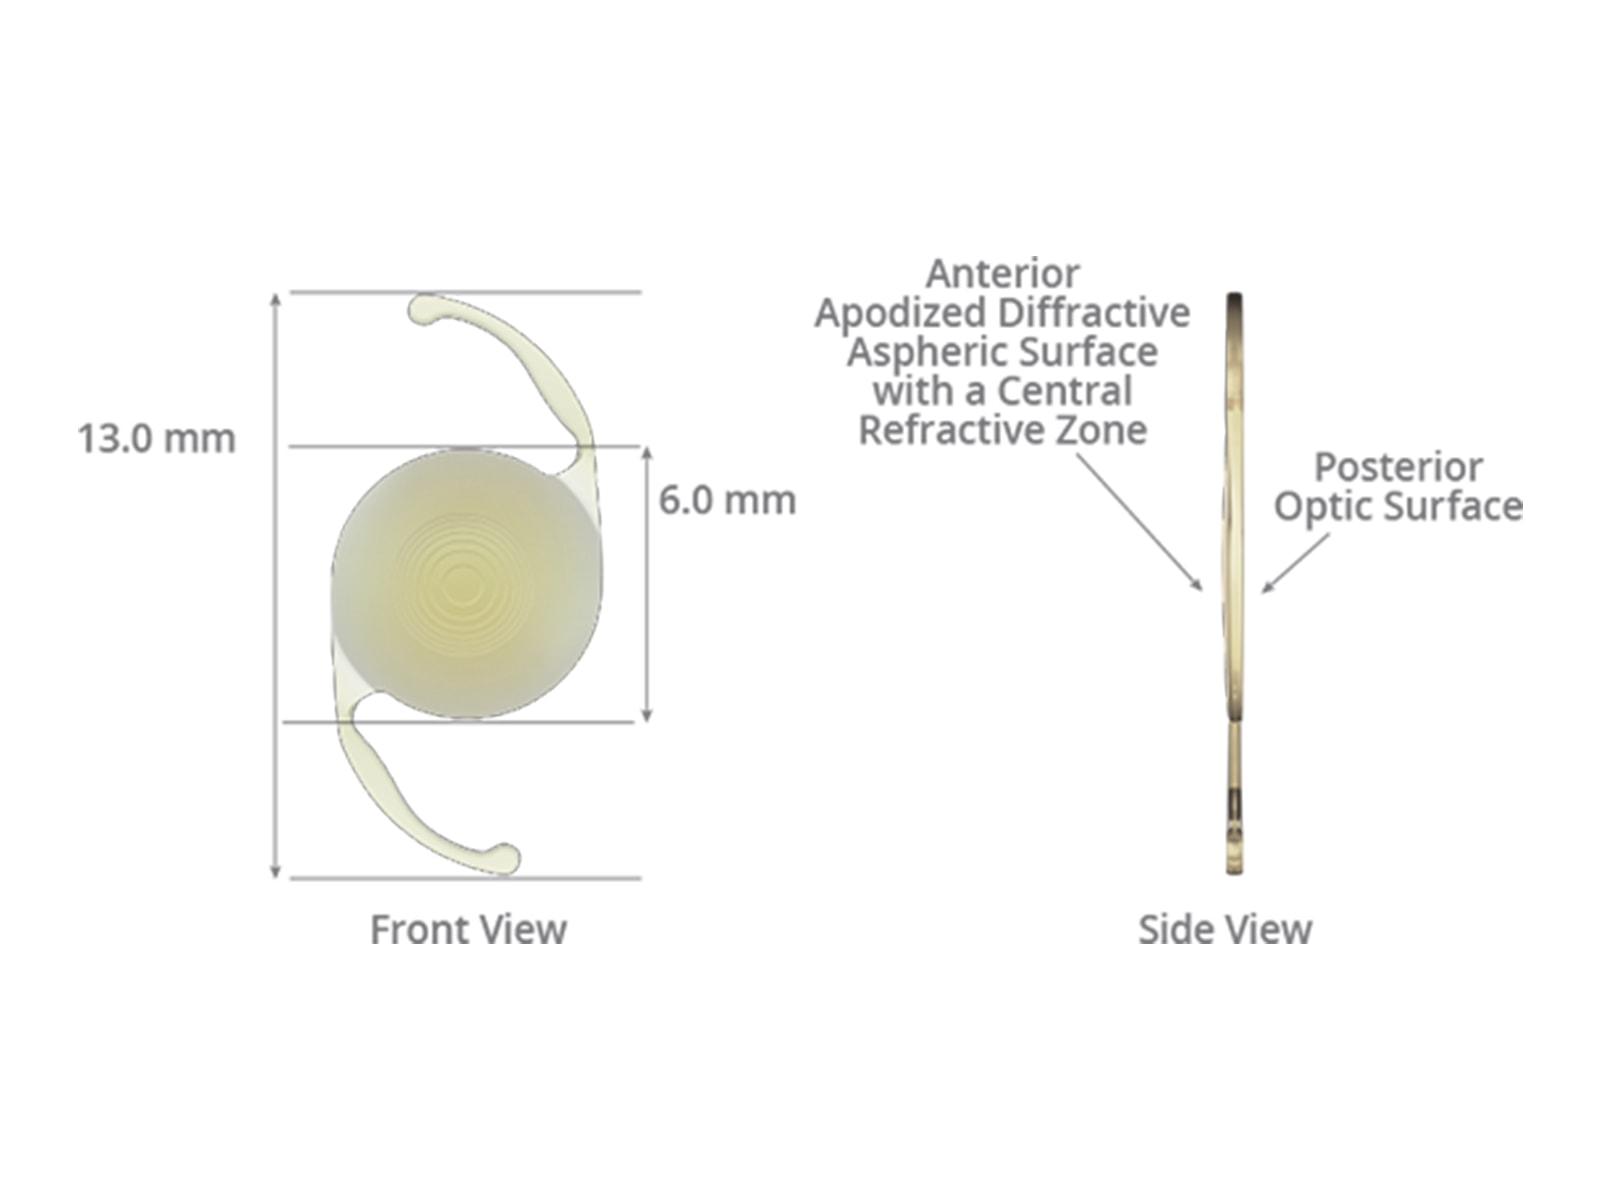 Acrysof restor lens alcon partes humanas del cuerpo